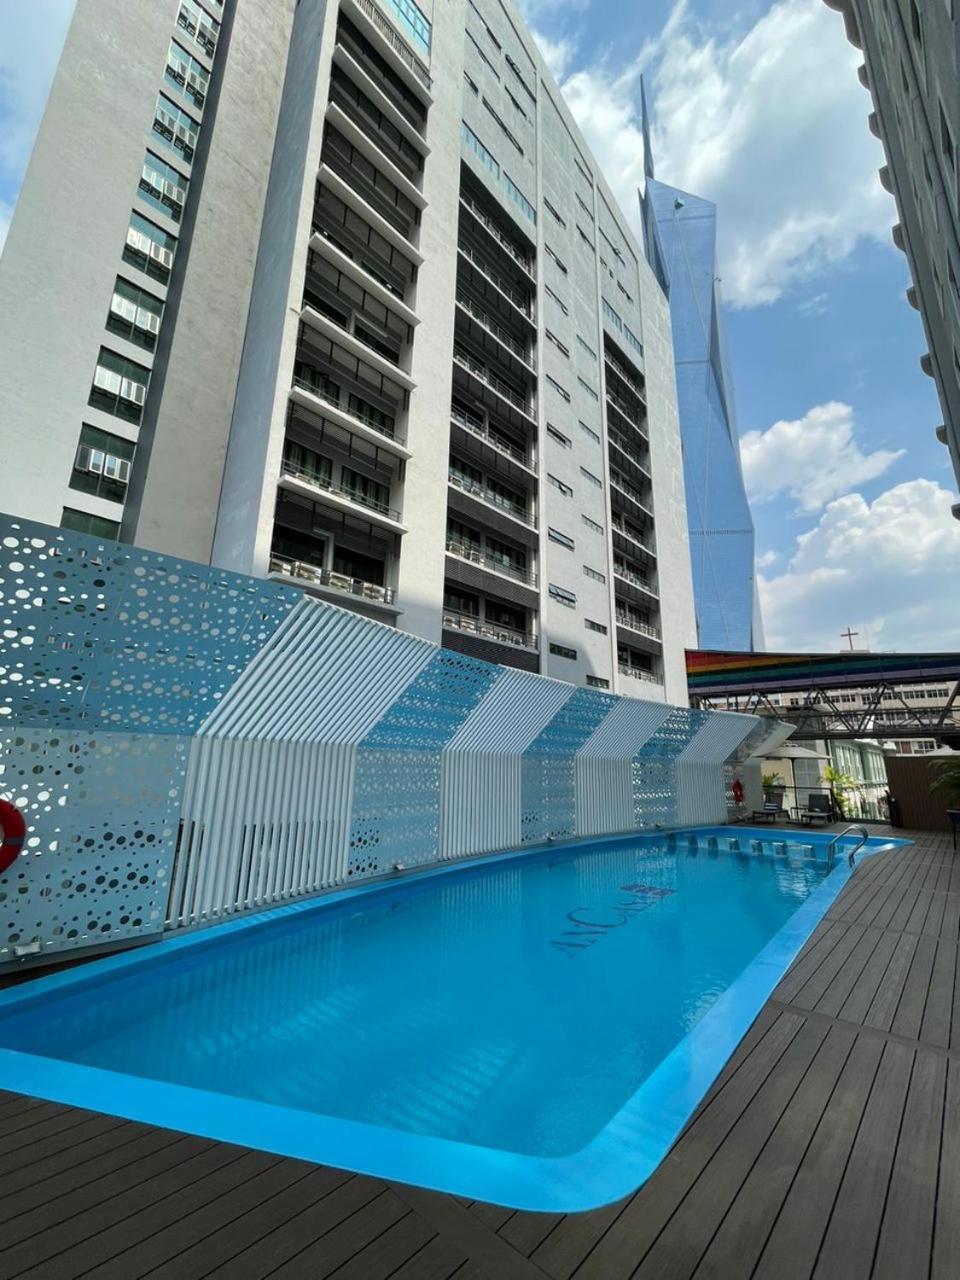 Ancasa Hotel Kuala Lumpur, Chinatown By Ancasa Hotels & Resorts Exterior foto